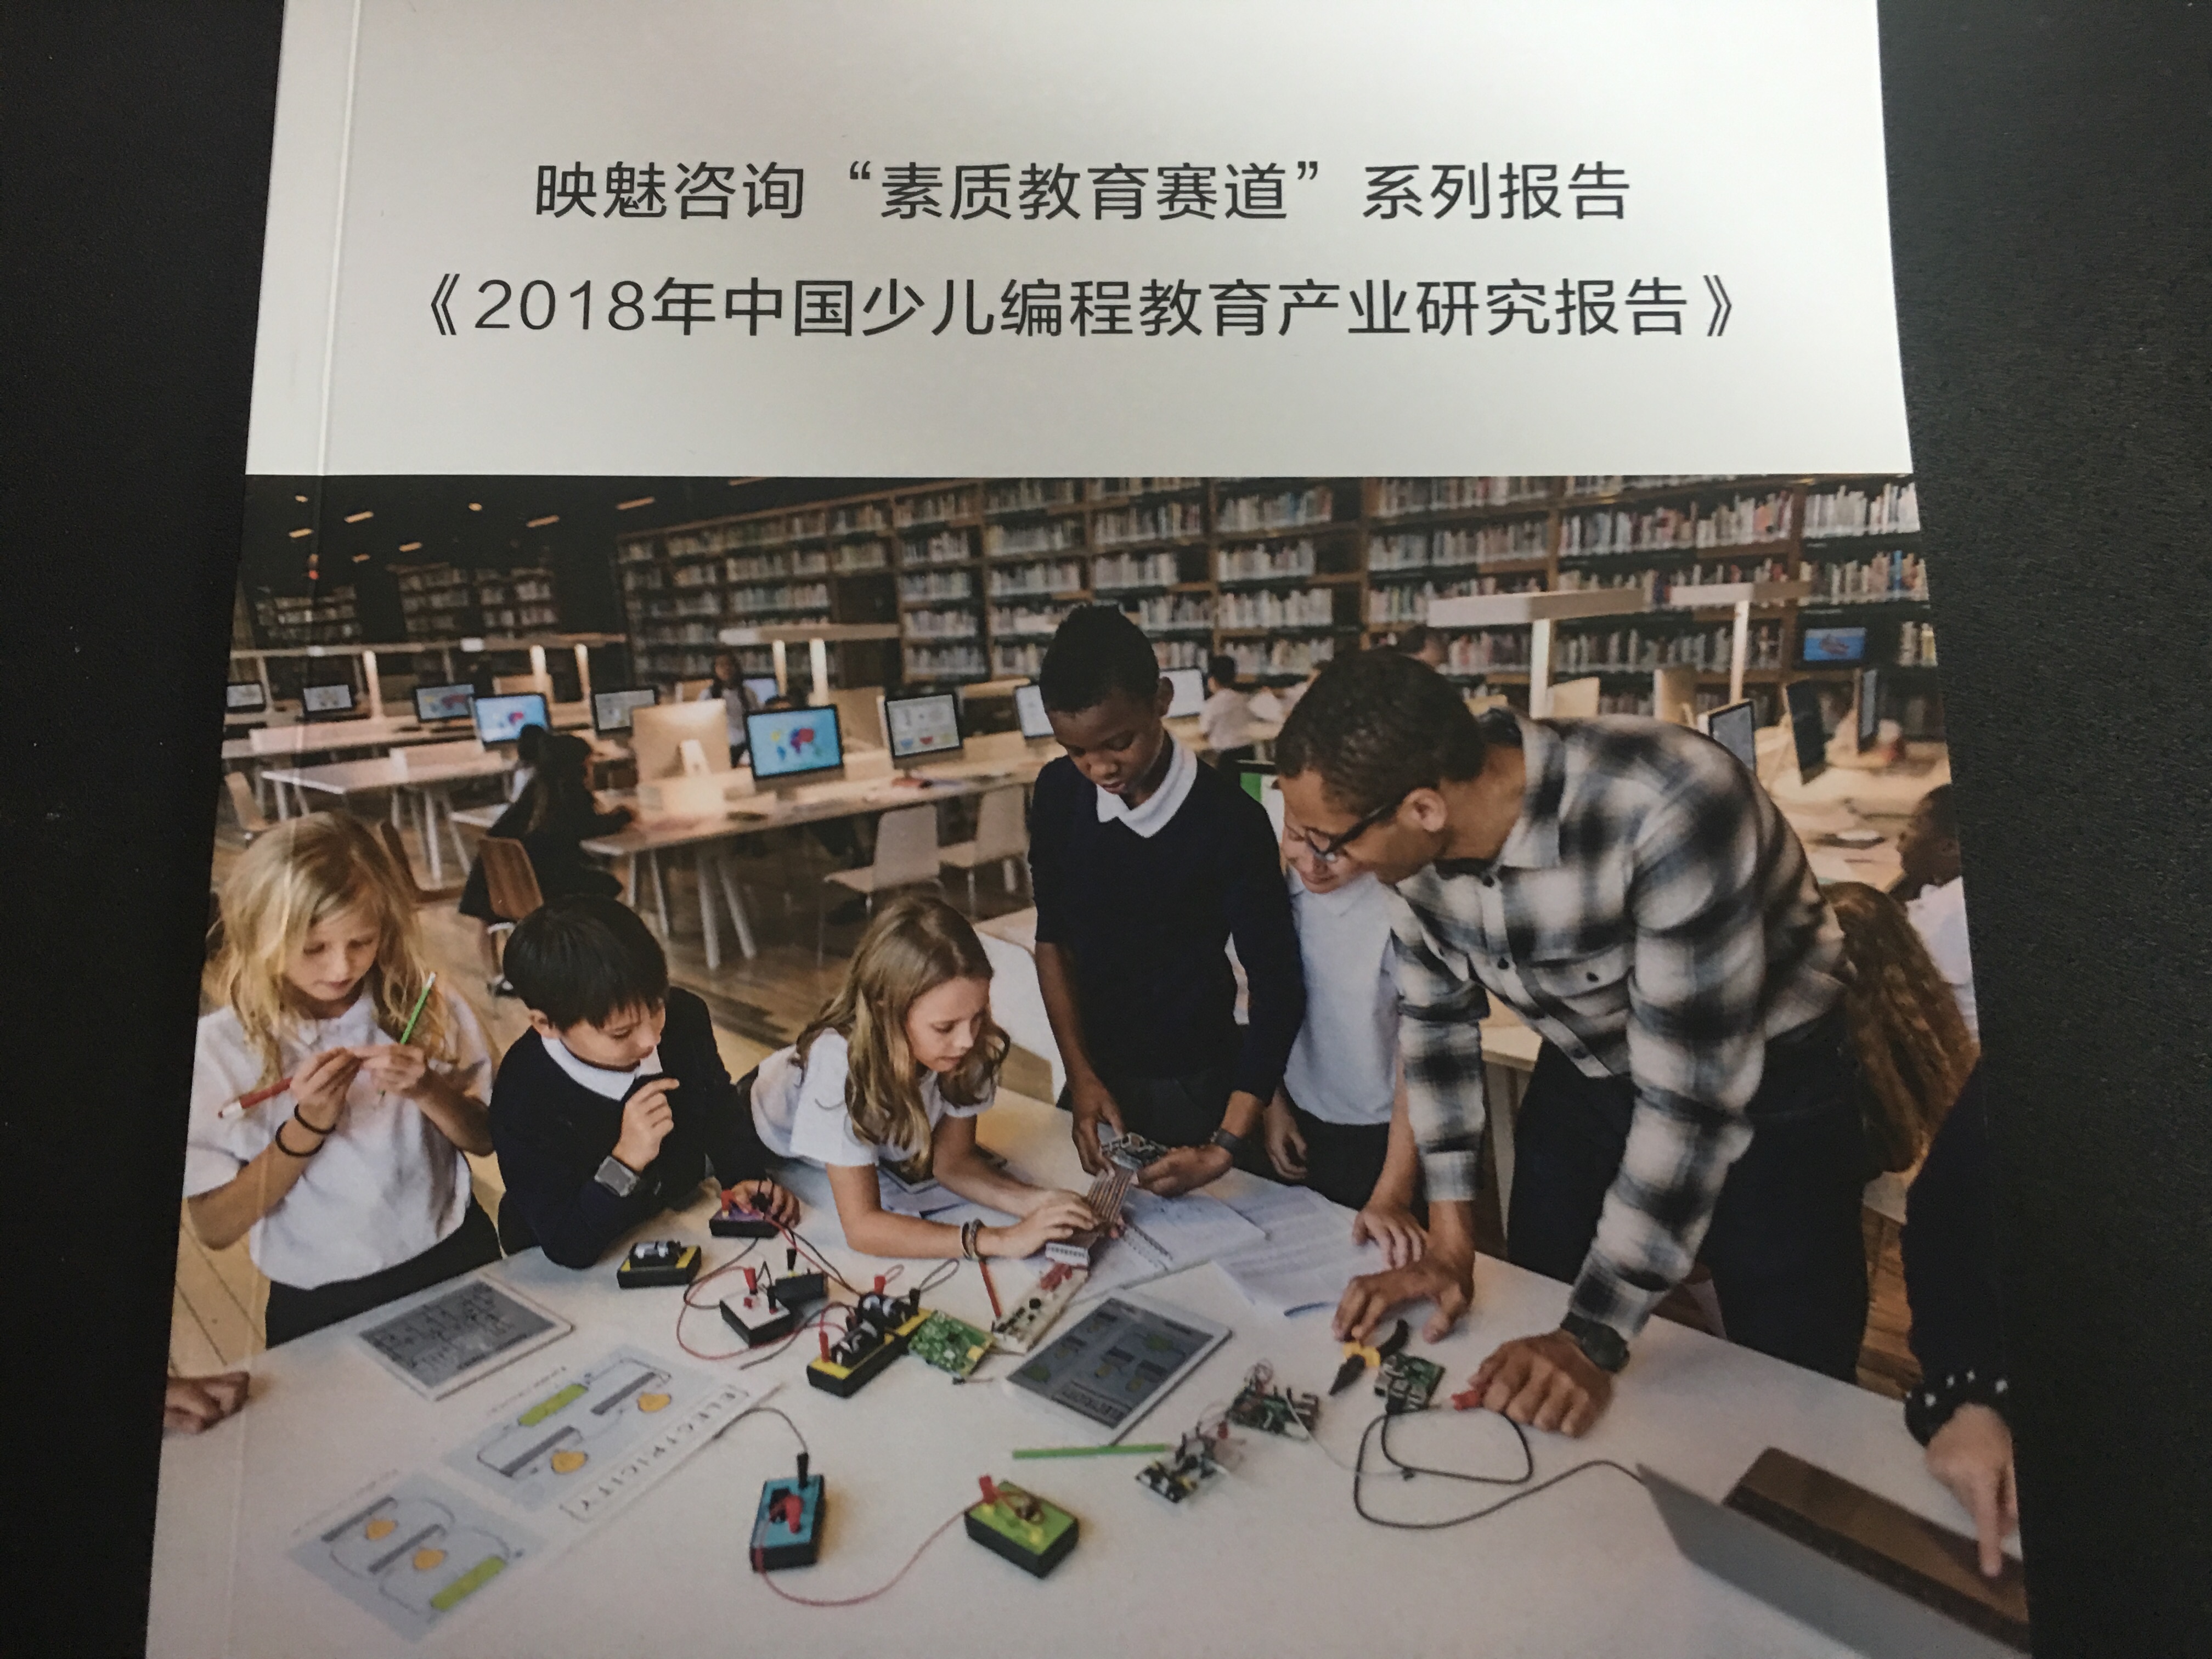 映魅咨询发布《2018年中国少儿编程教育产业研究报告》，远未到终极形态，少儿编程教育赛道依然值得高度关注